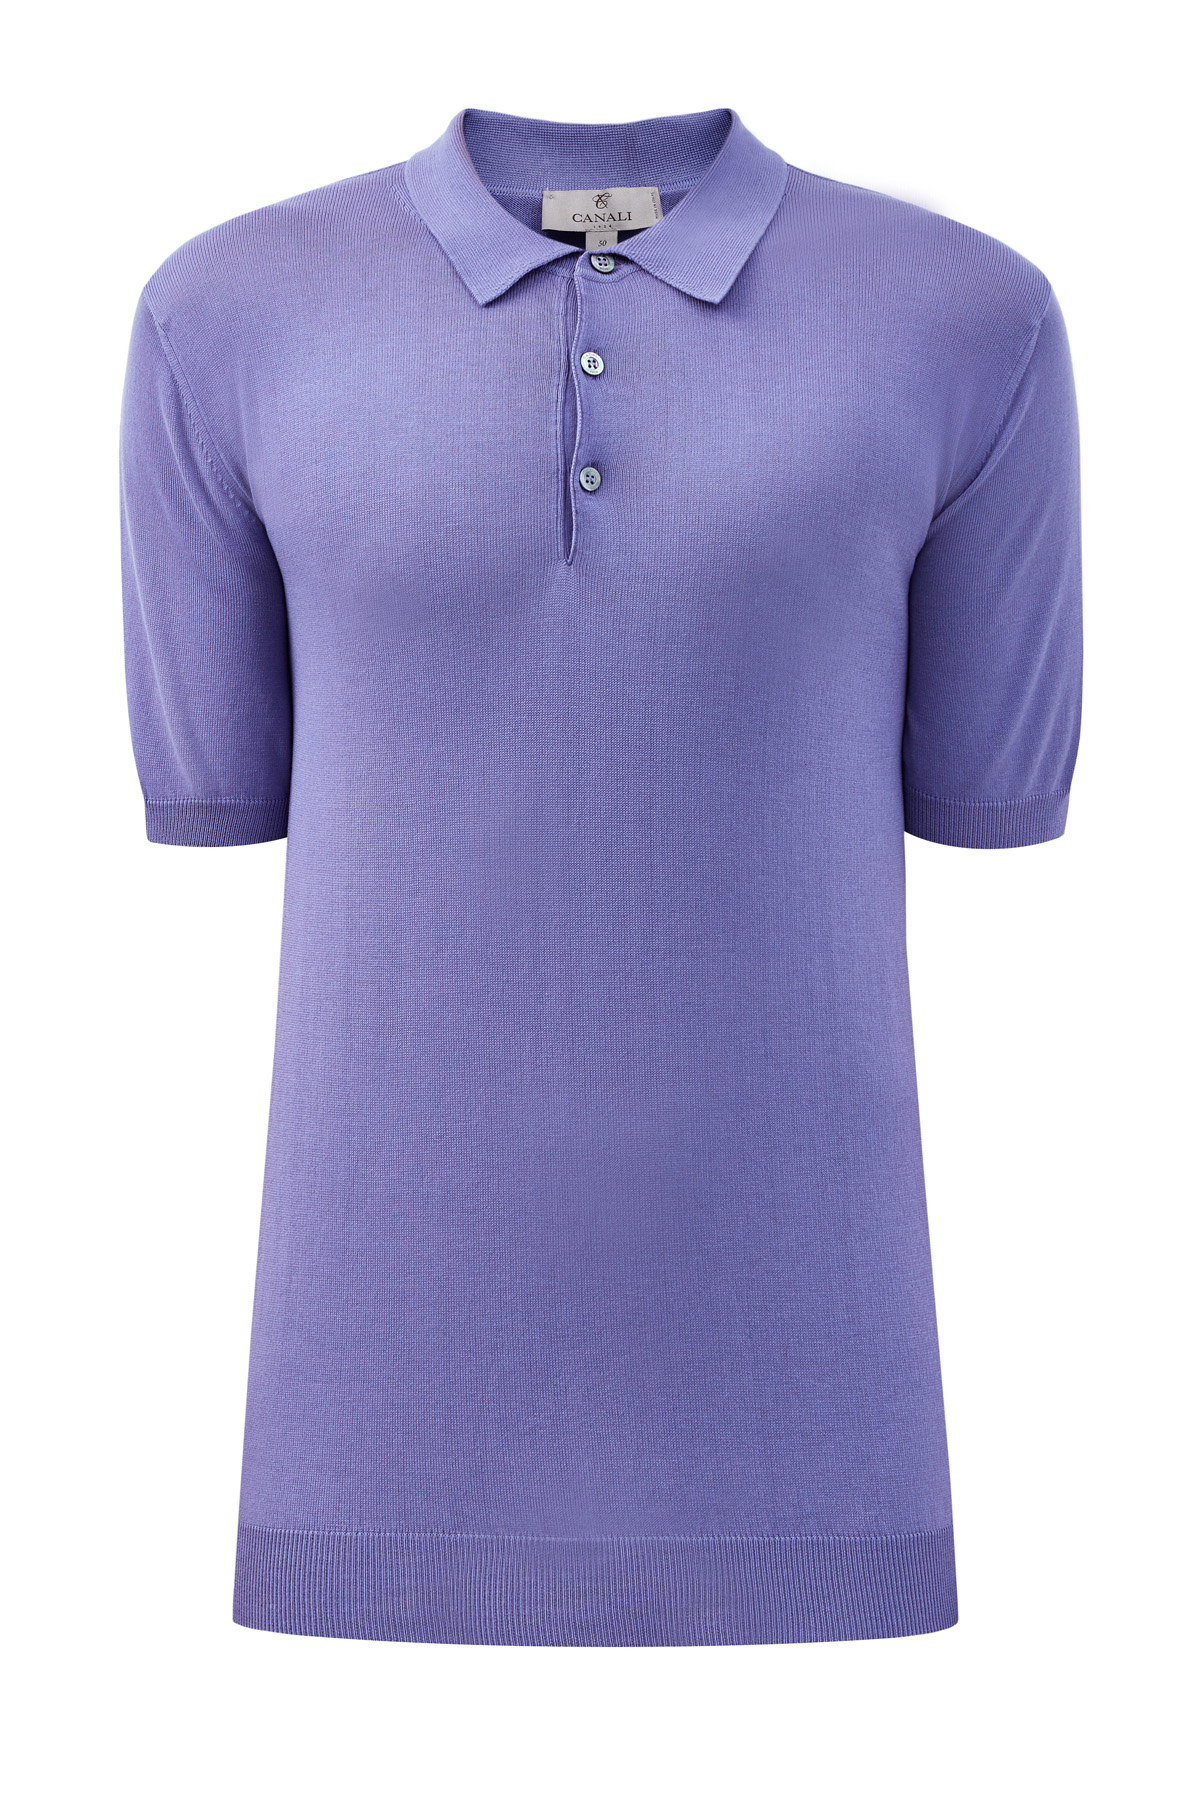 Джемпер-поло из легкой хлопковой пряжи CANALI, цвет фиолетовый, размер 52;60 - фото 1